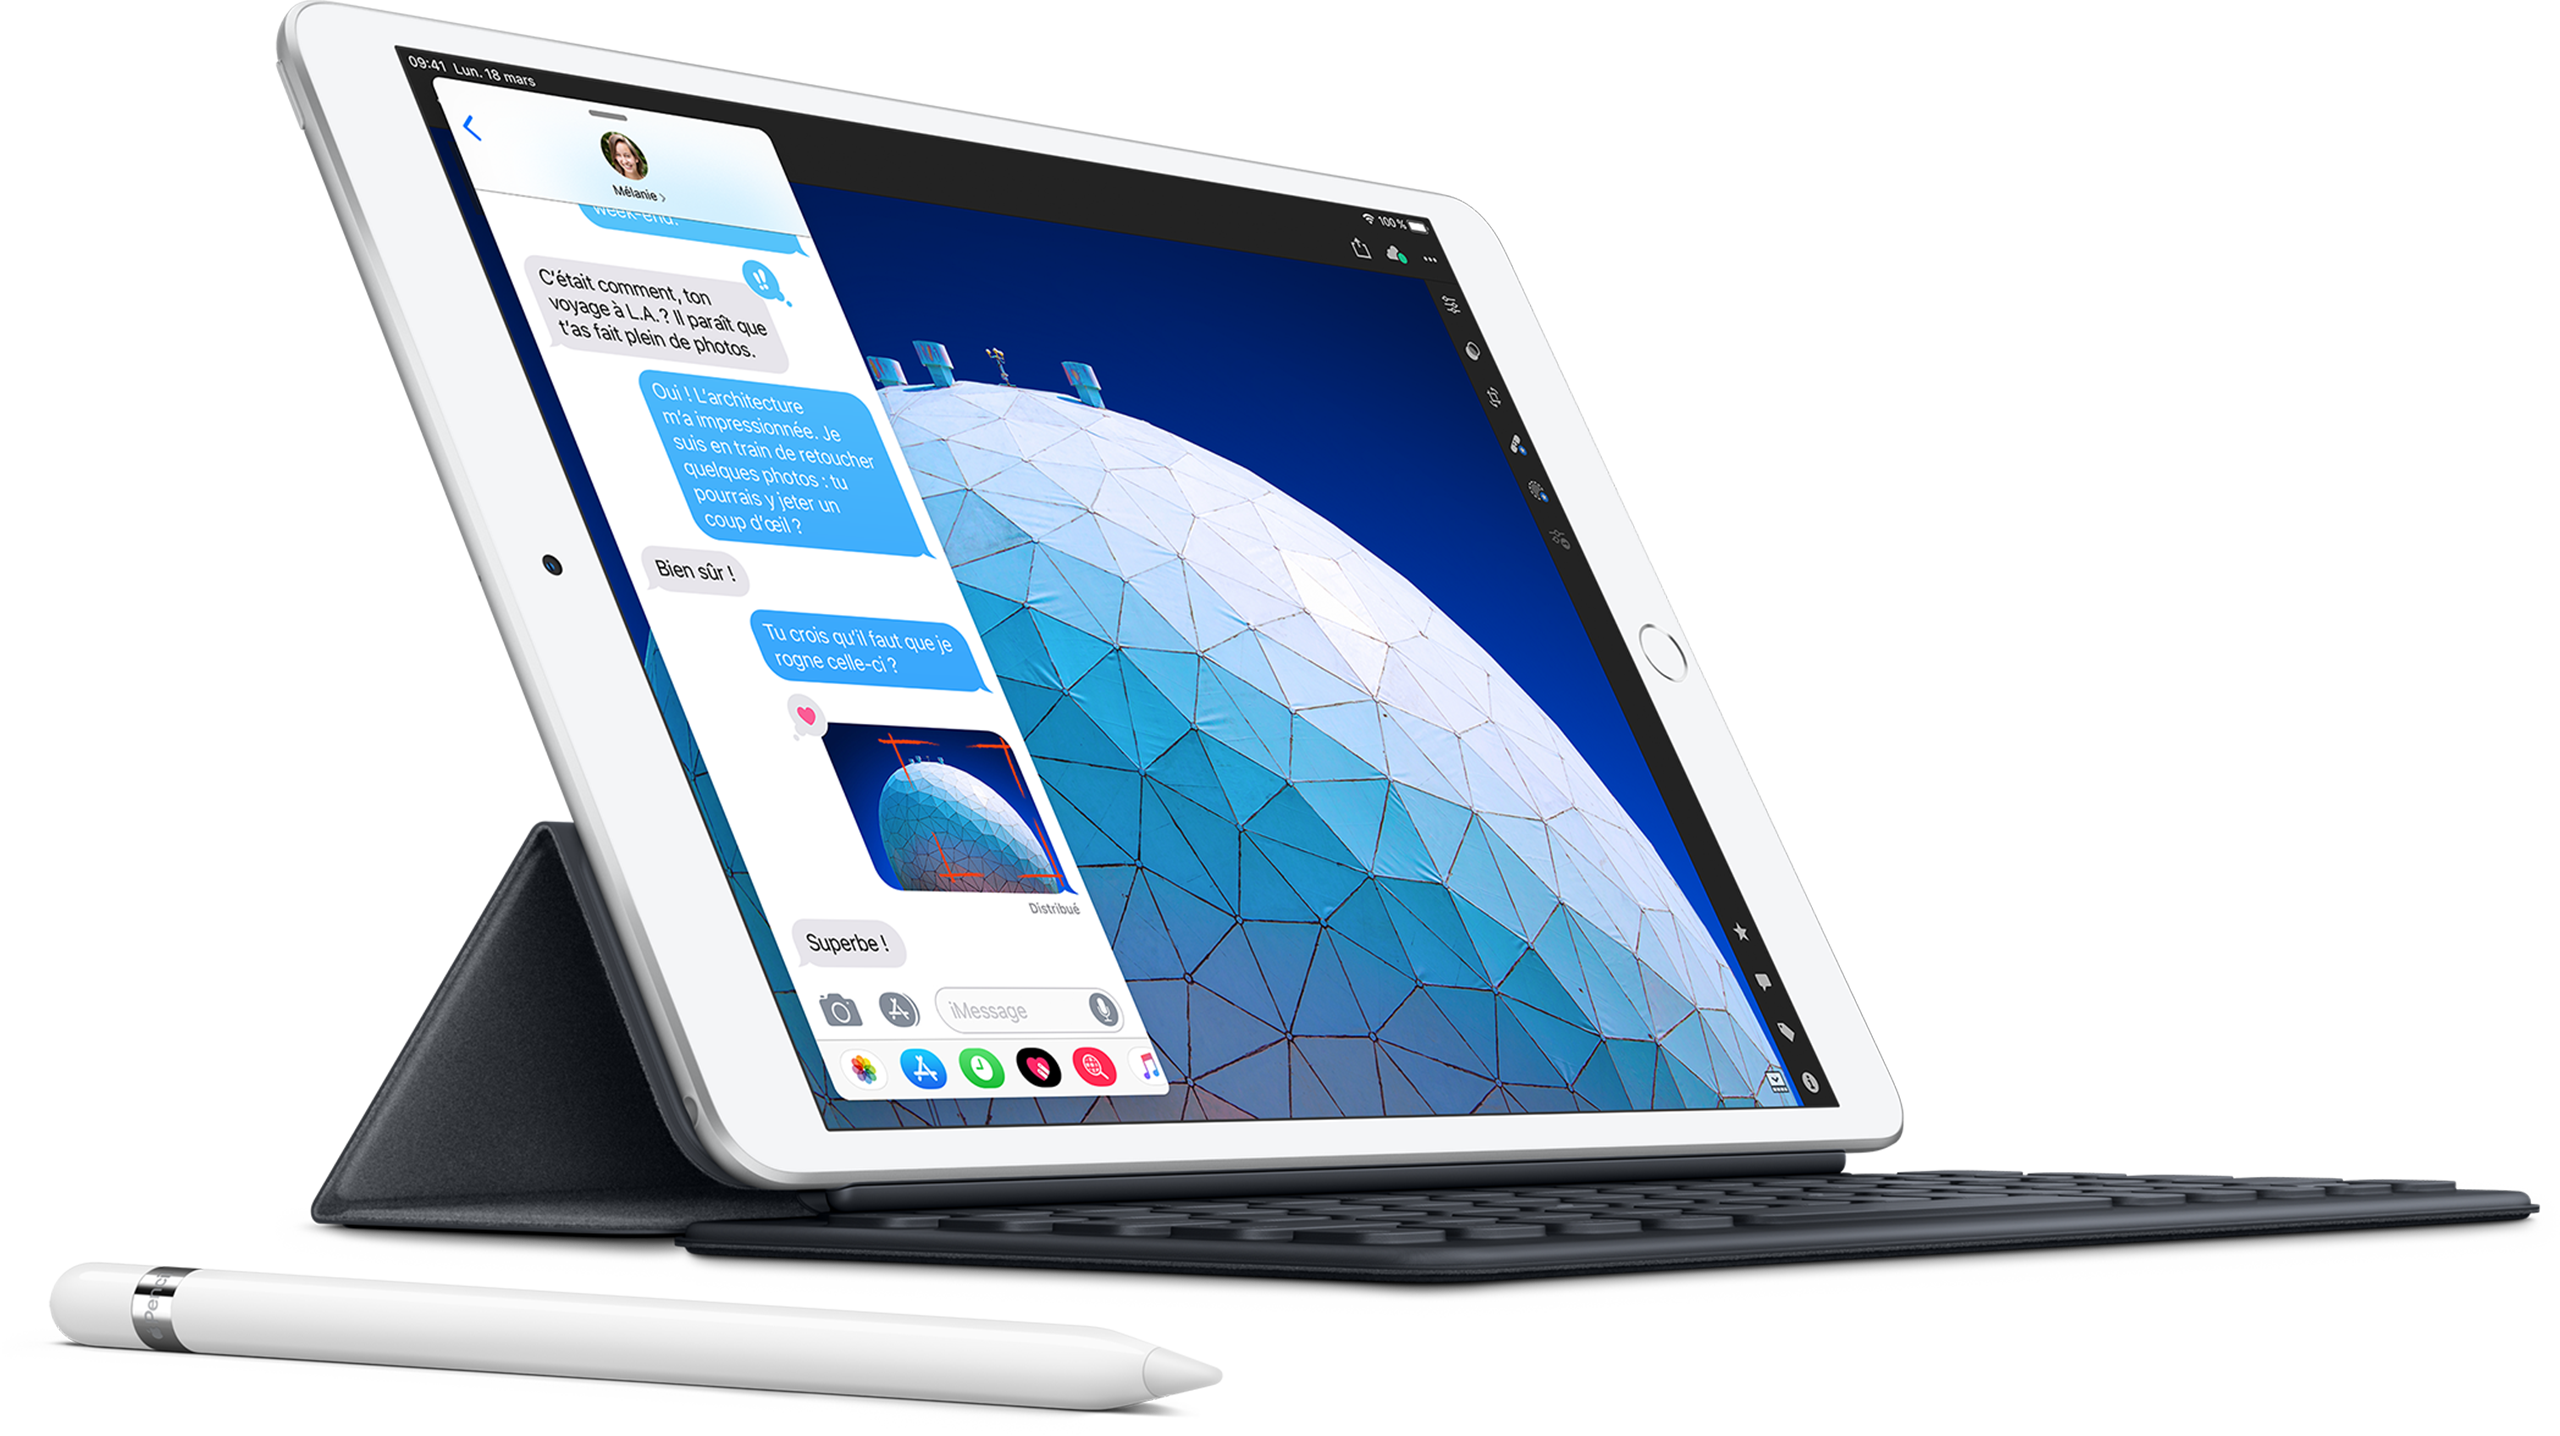 Apple iPad Pro (2018) 12.9 pouces 256 Go Wi-Fi Gris Sidéral - Tablette  tactile - Garantie 3 ans LDLC